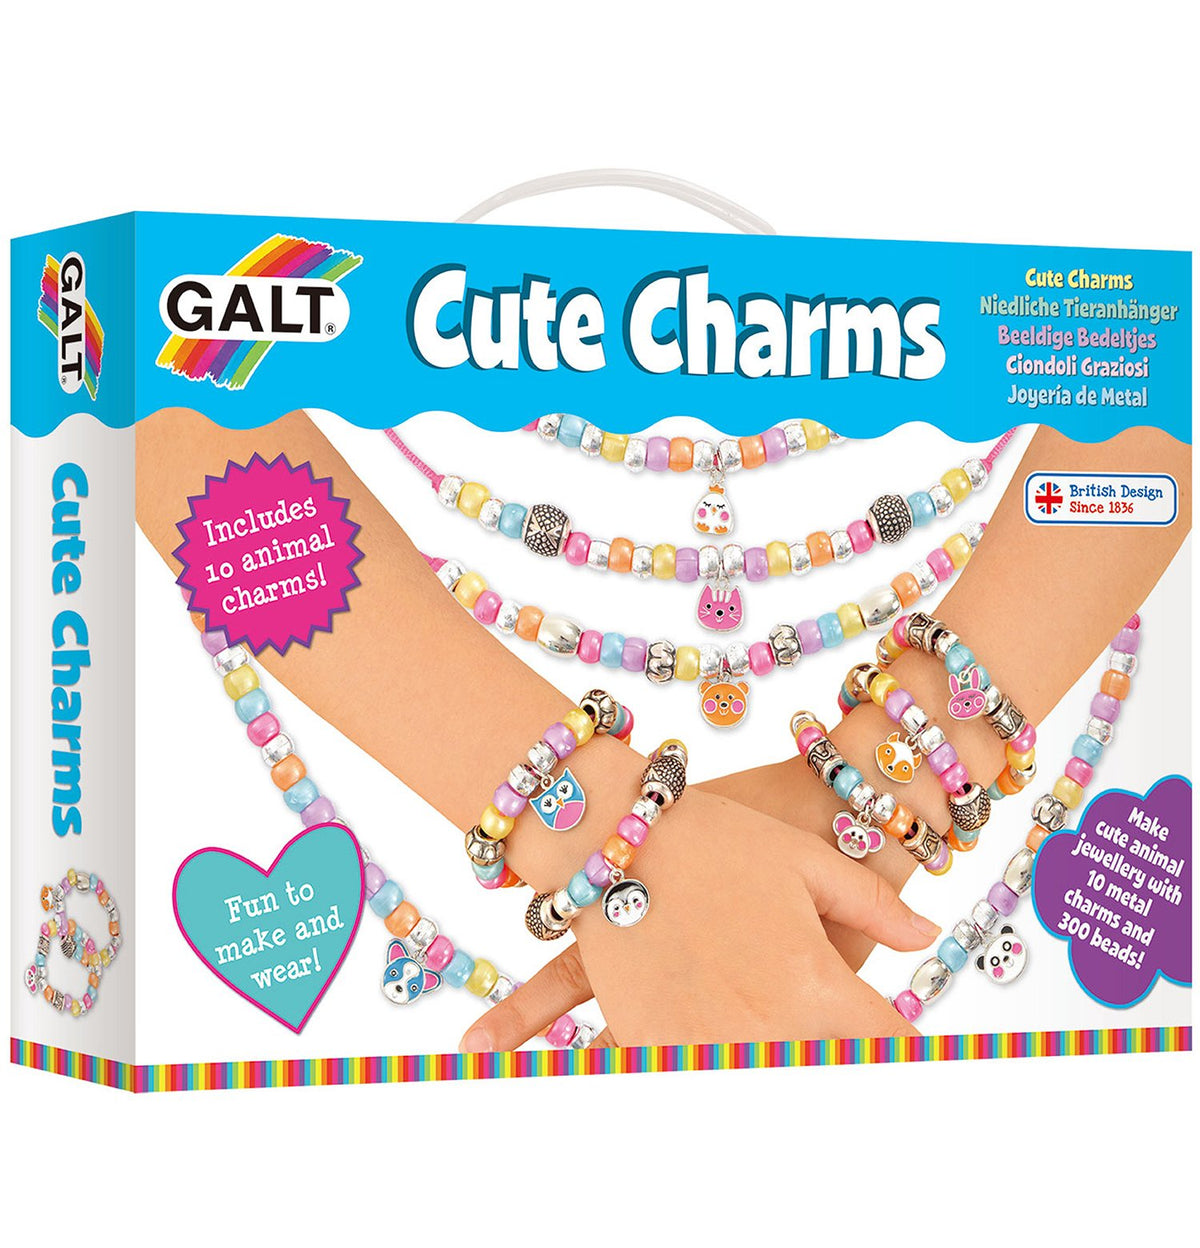 Cute Charms - Galt